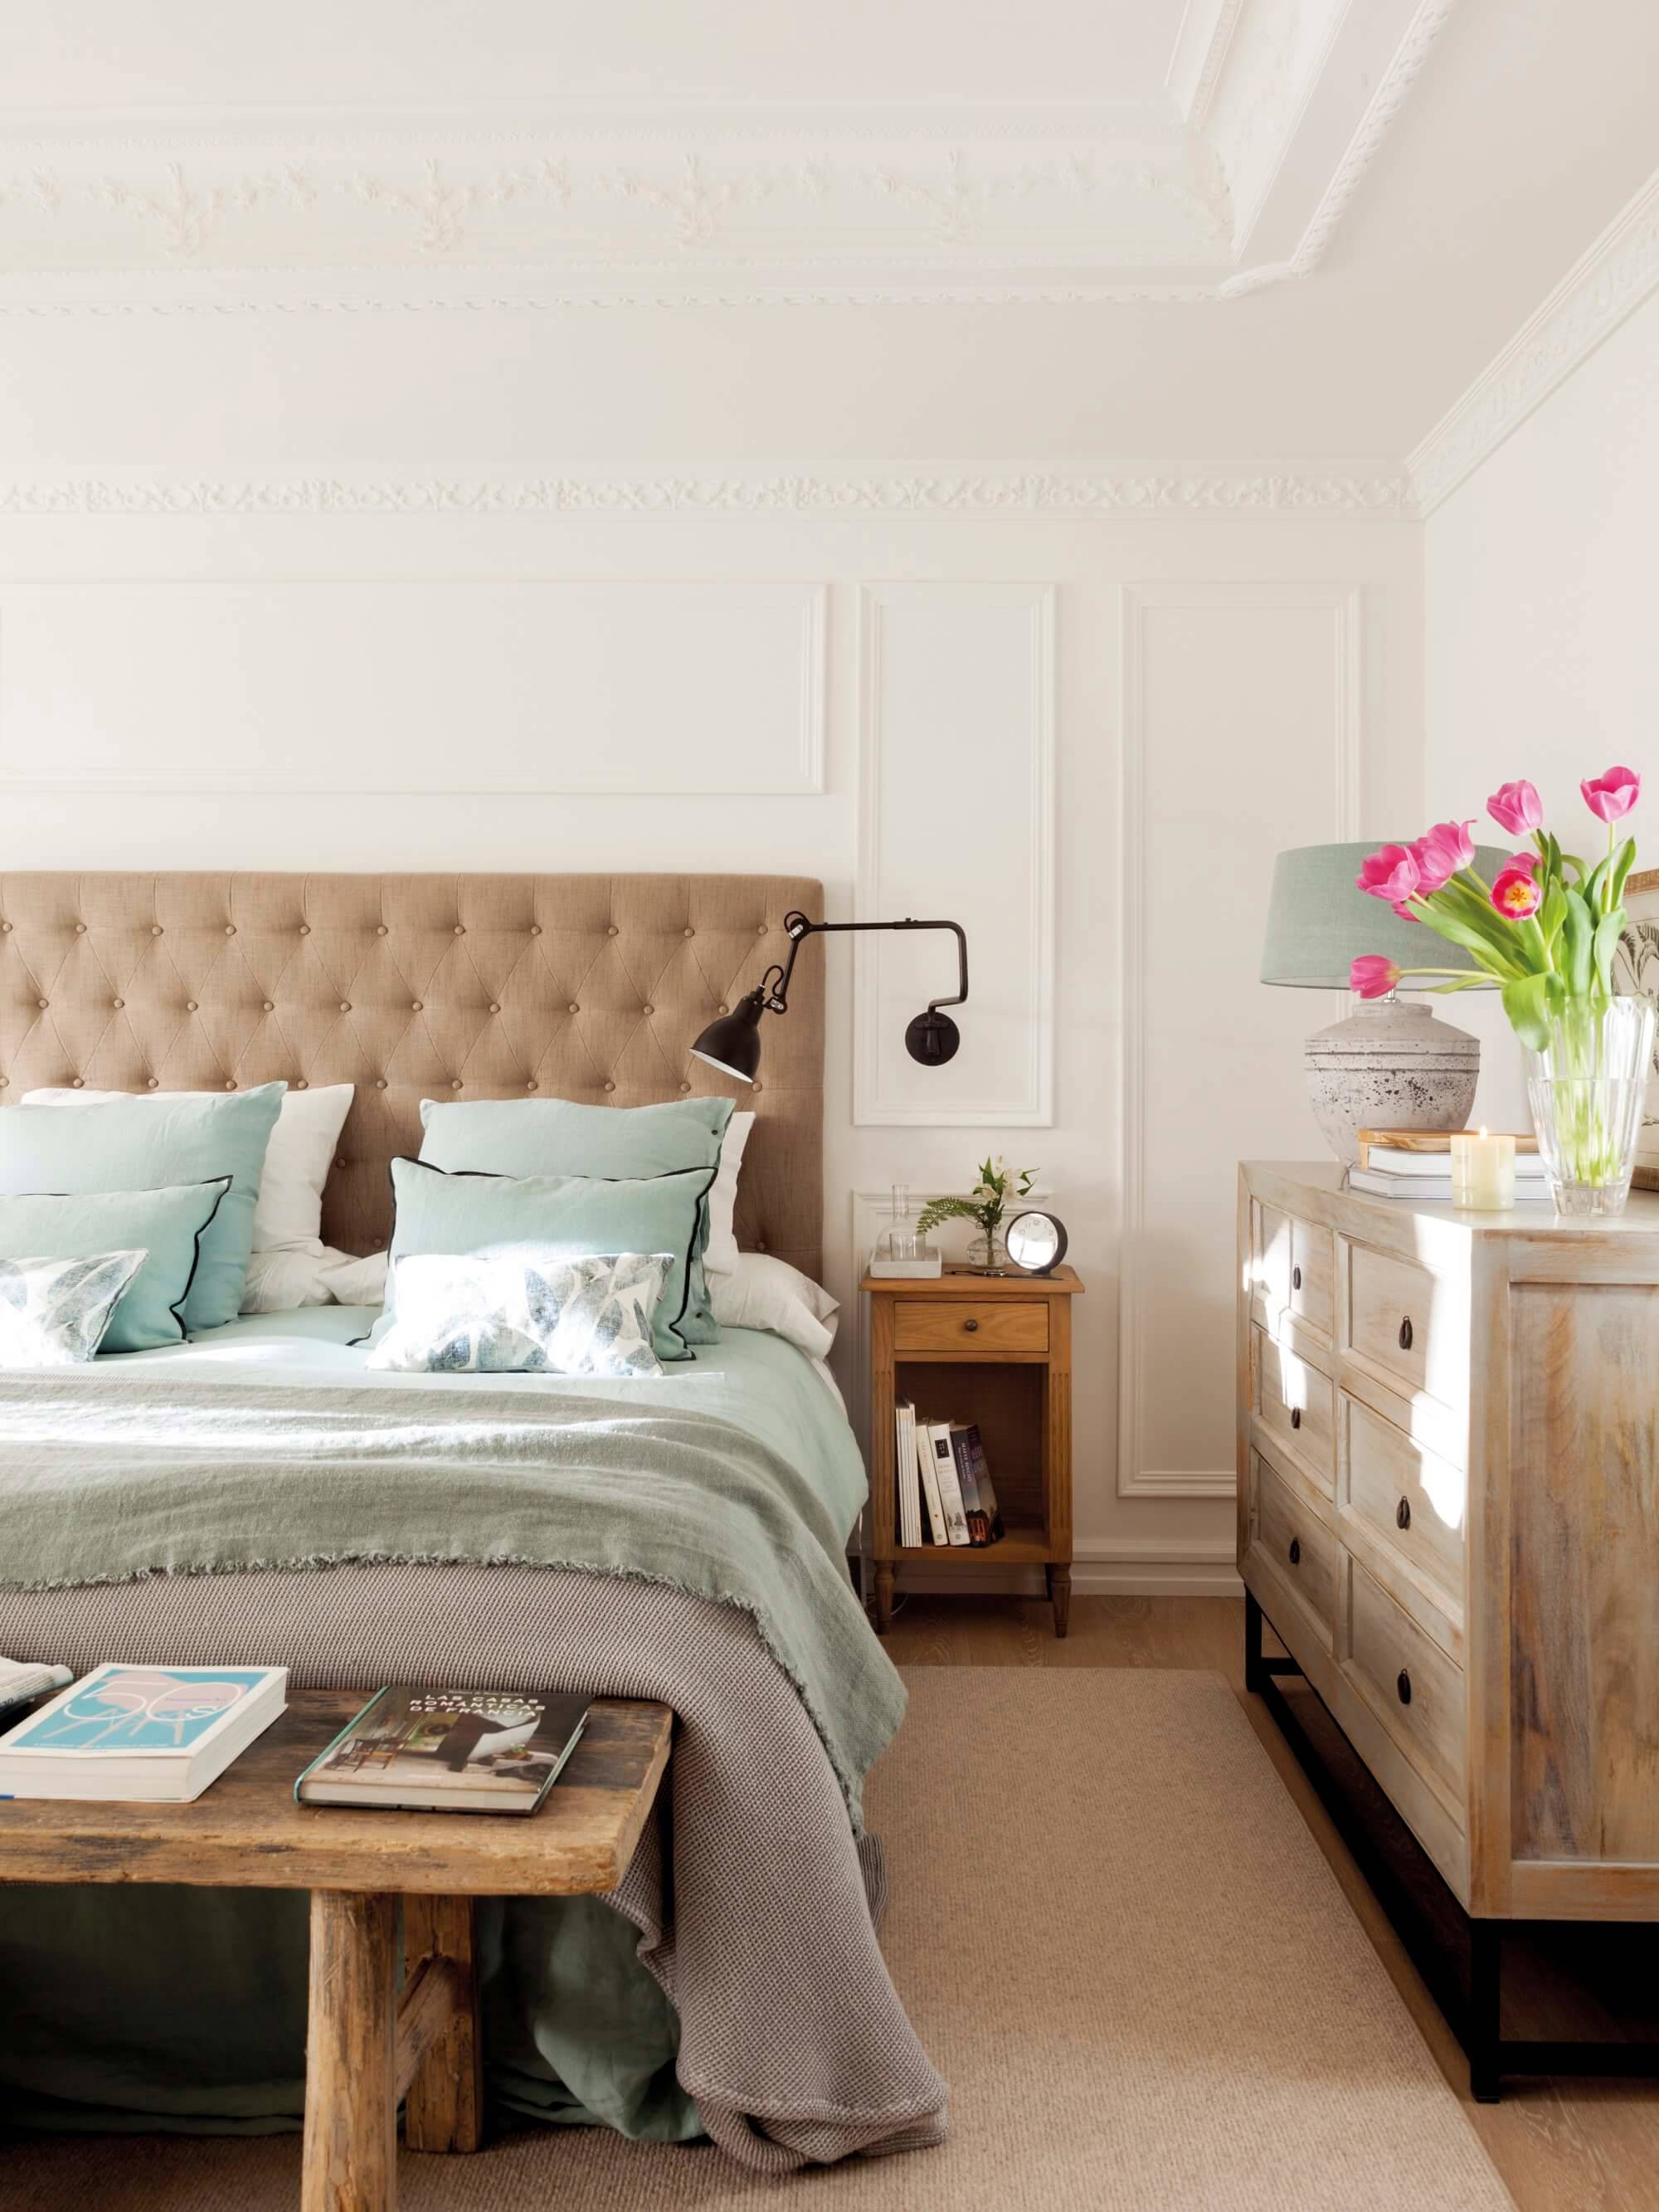 Dormitorio con cabecero con tapizado capitoné, banco de madera, cómoda de madera decapada y molduras decorativas.